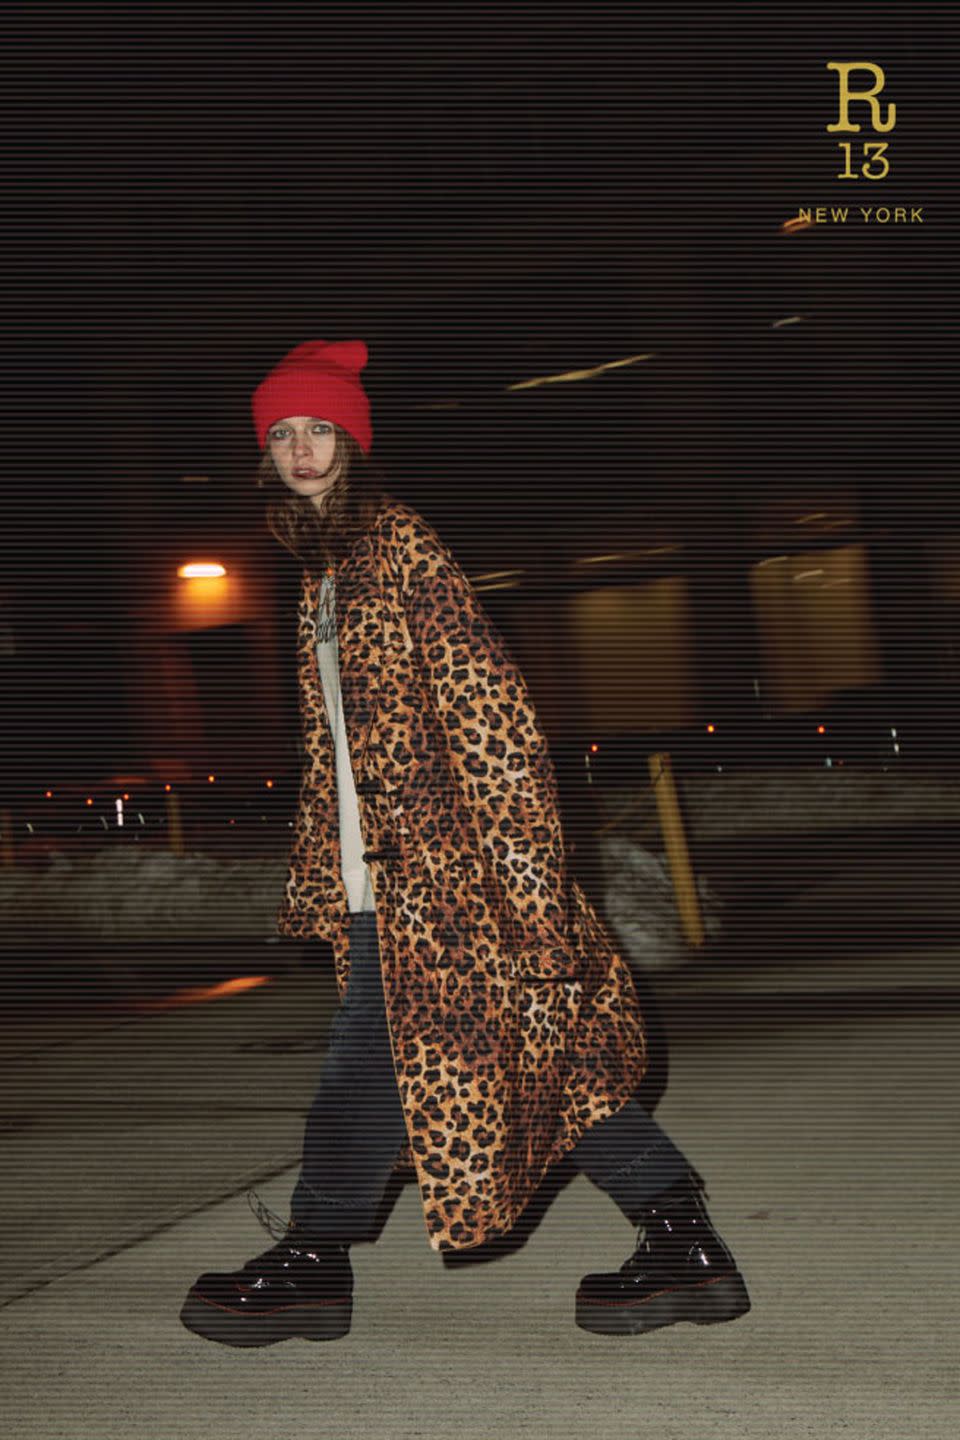 10) Leopard-Print Coats